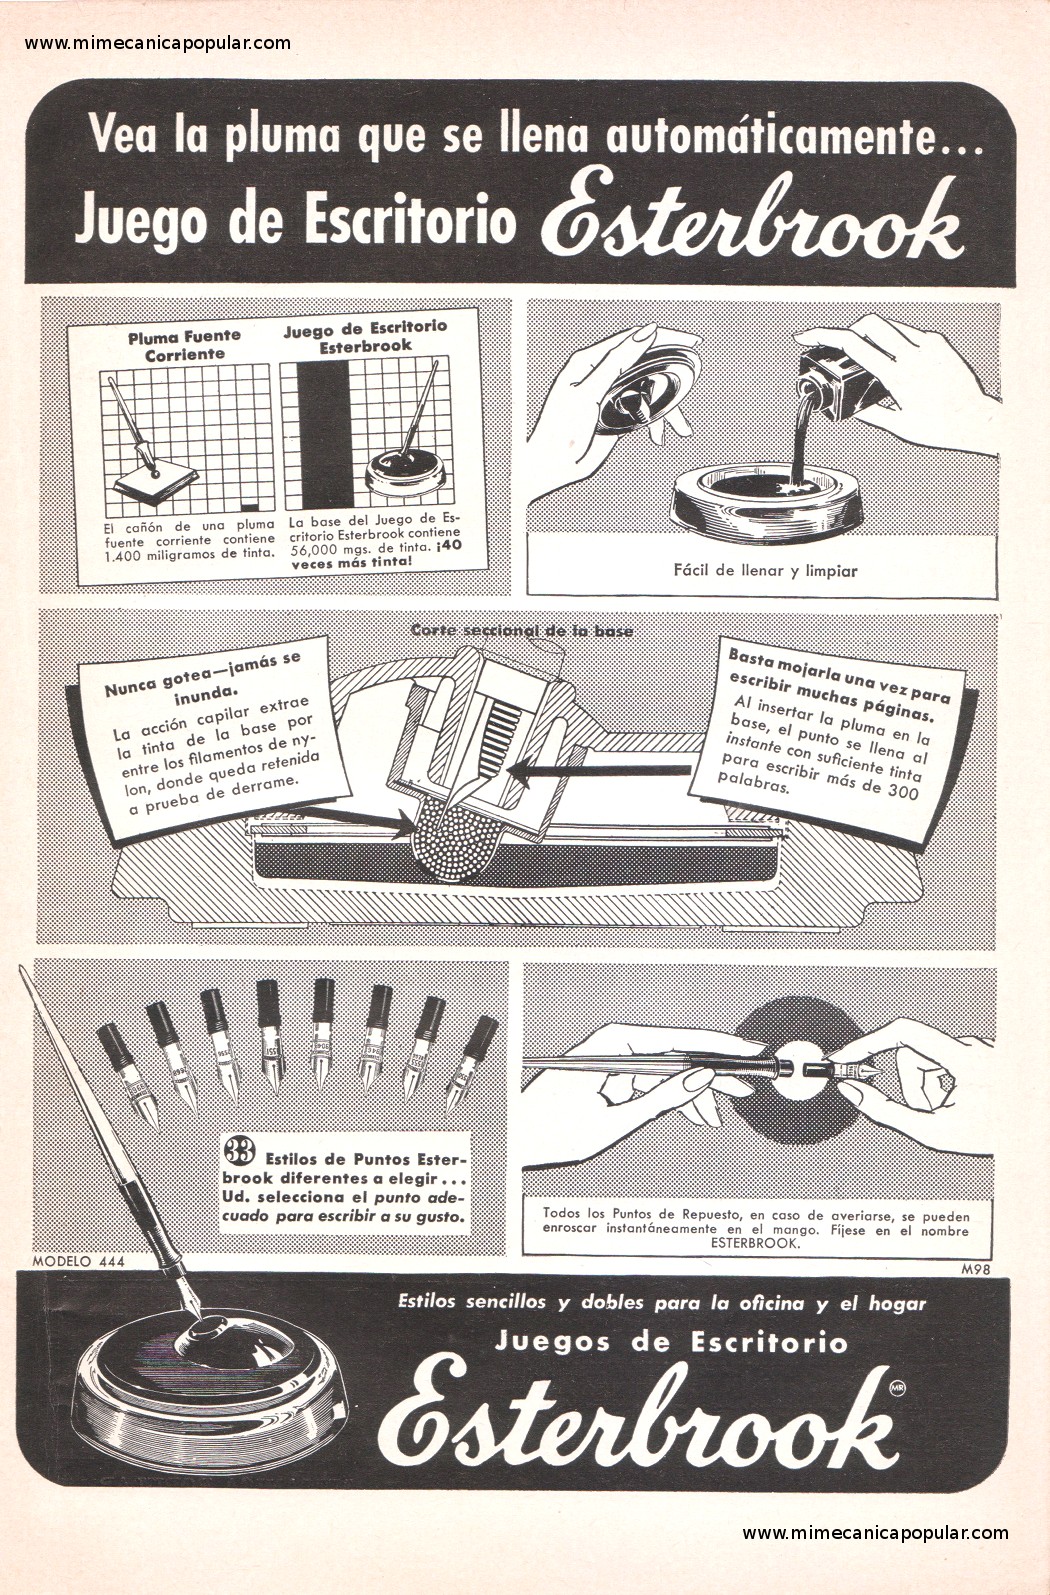 Publicidad - Juegos de Escritorio Esterbrook - Agosto 1955